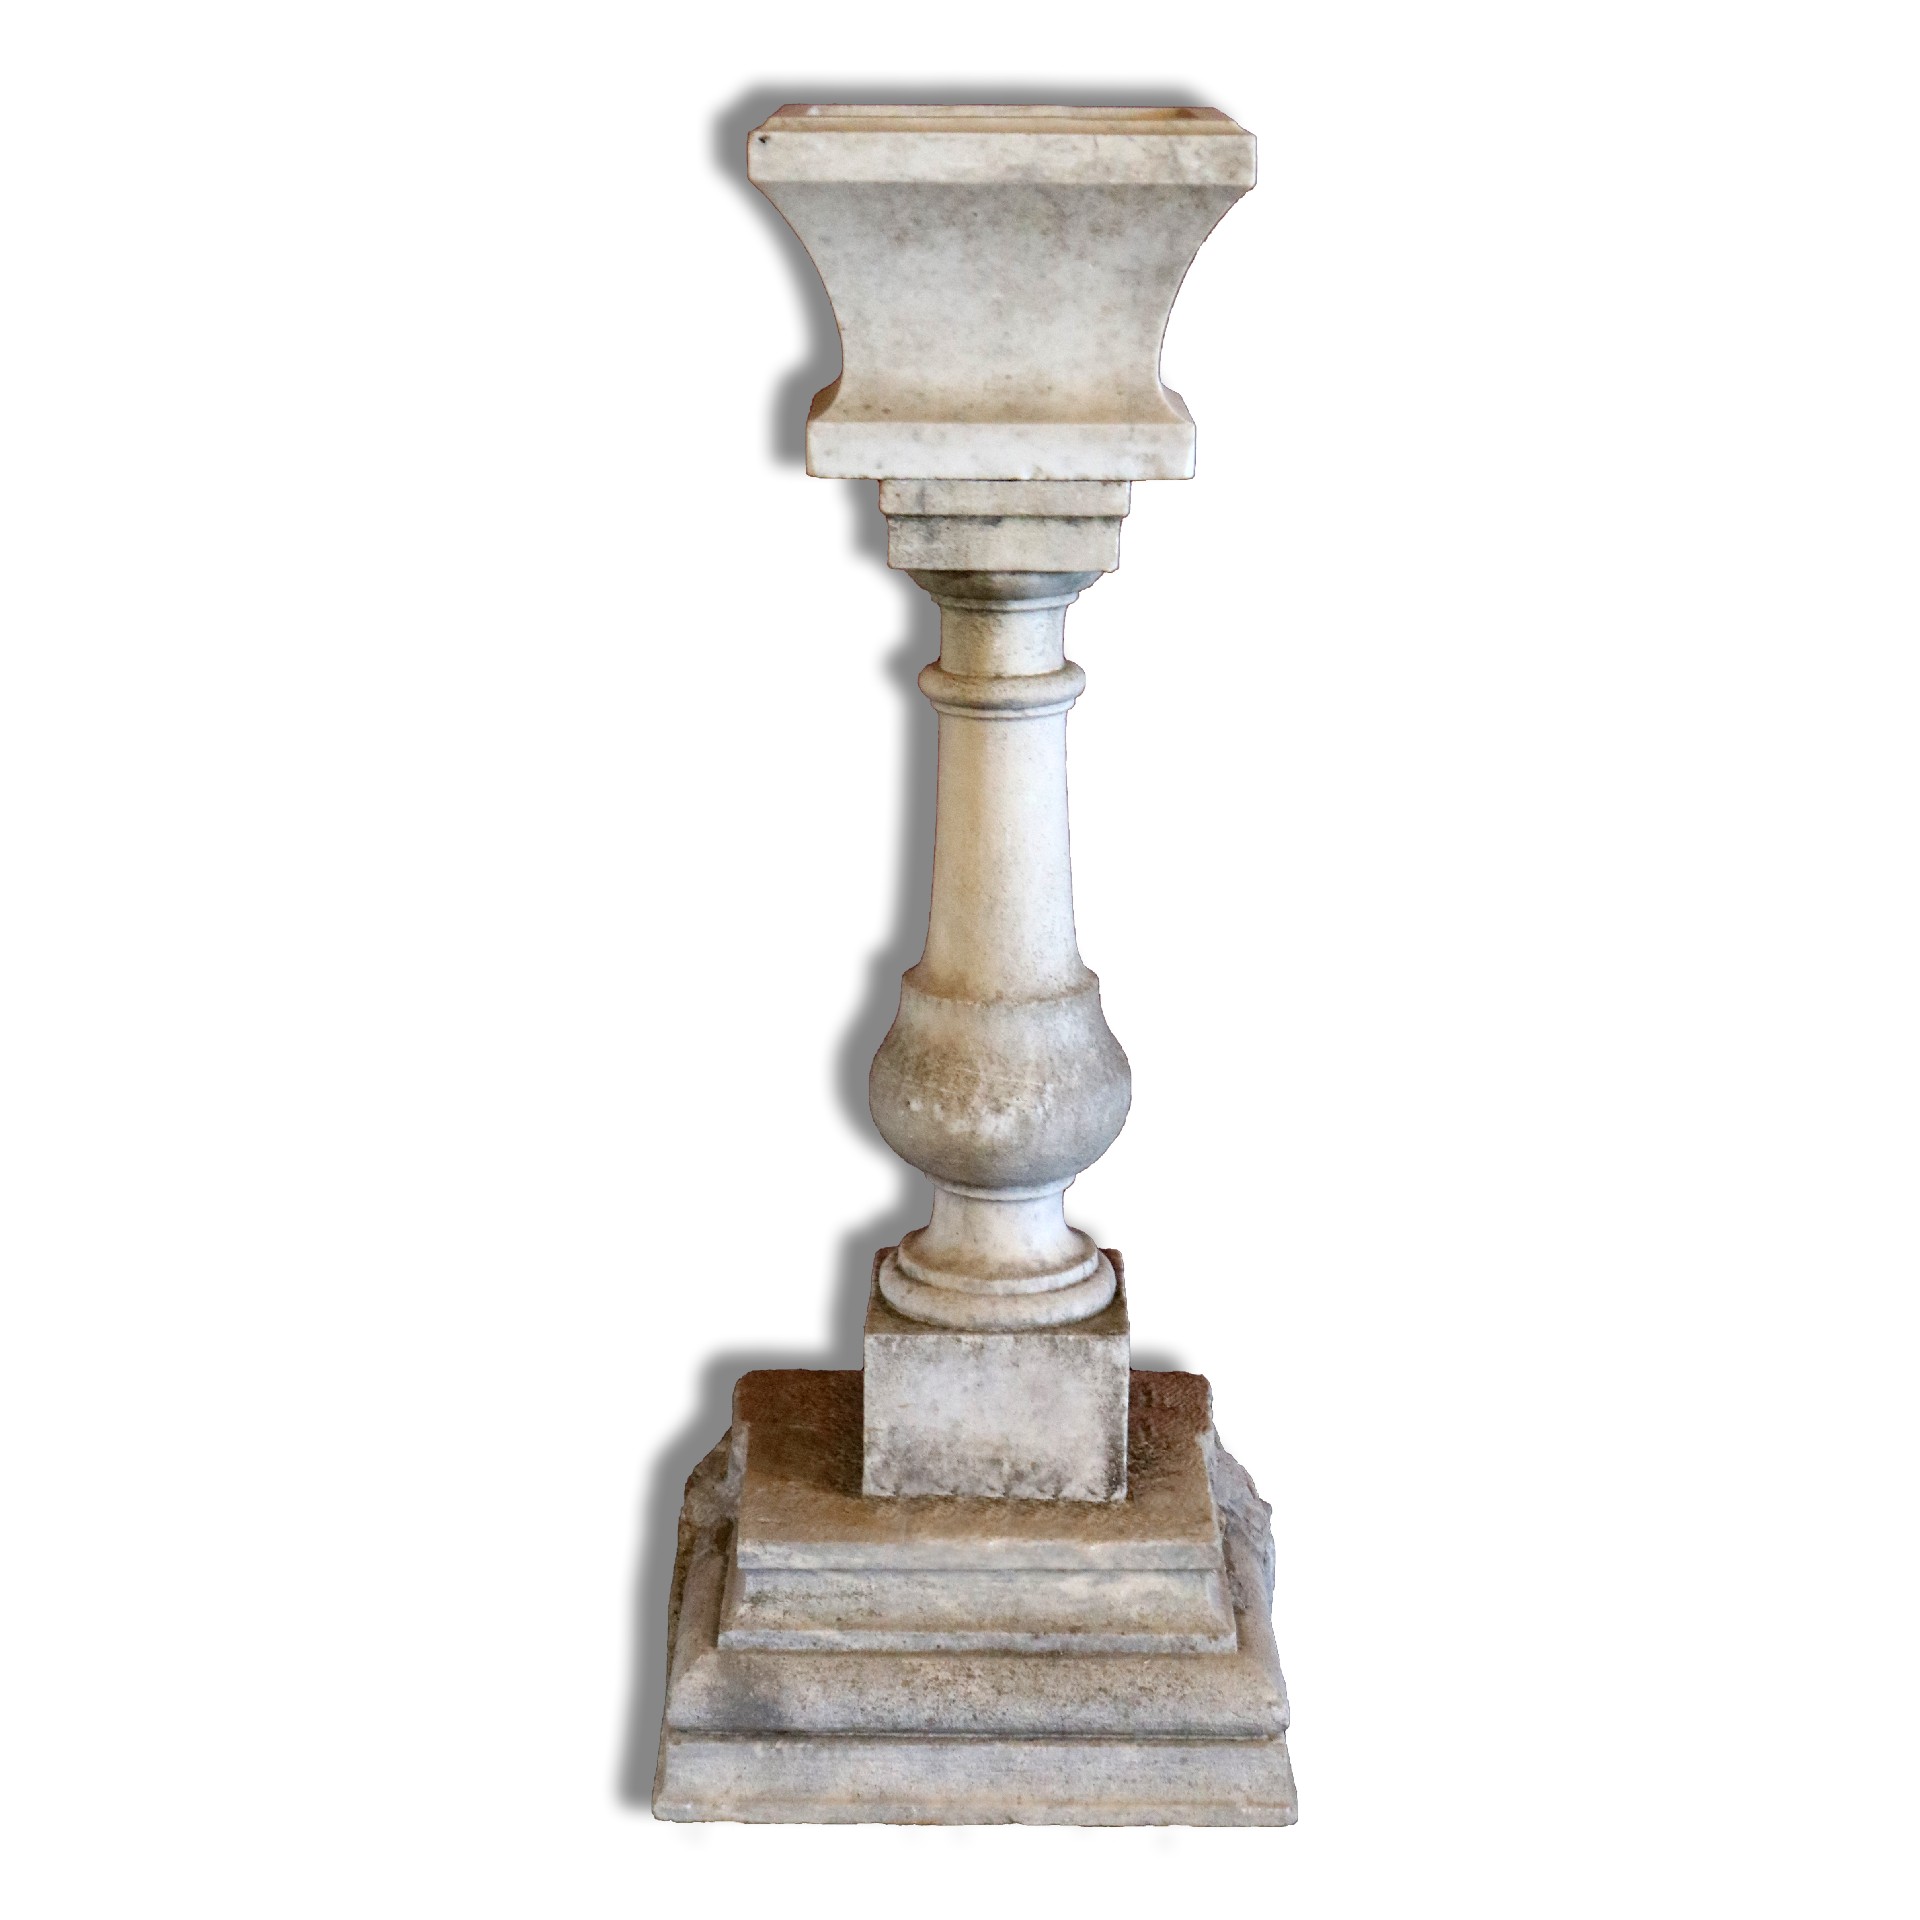 Antica fontana in marmo. - Fontane Antiche - Arredo Giardino - Prodotti - Antichità Fiorillo